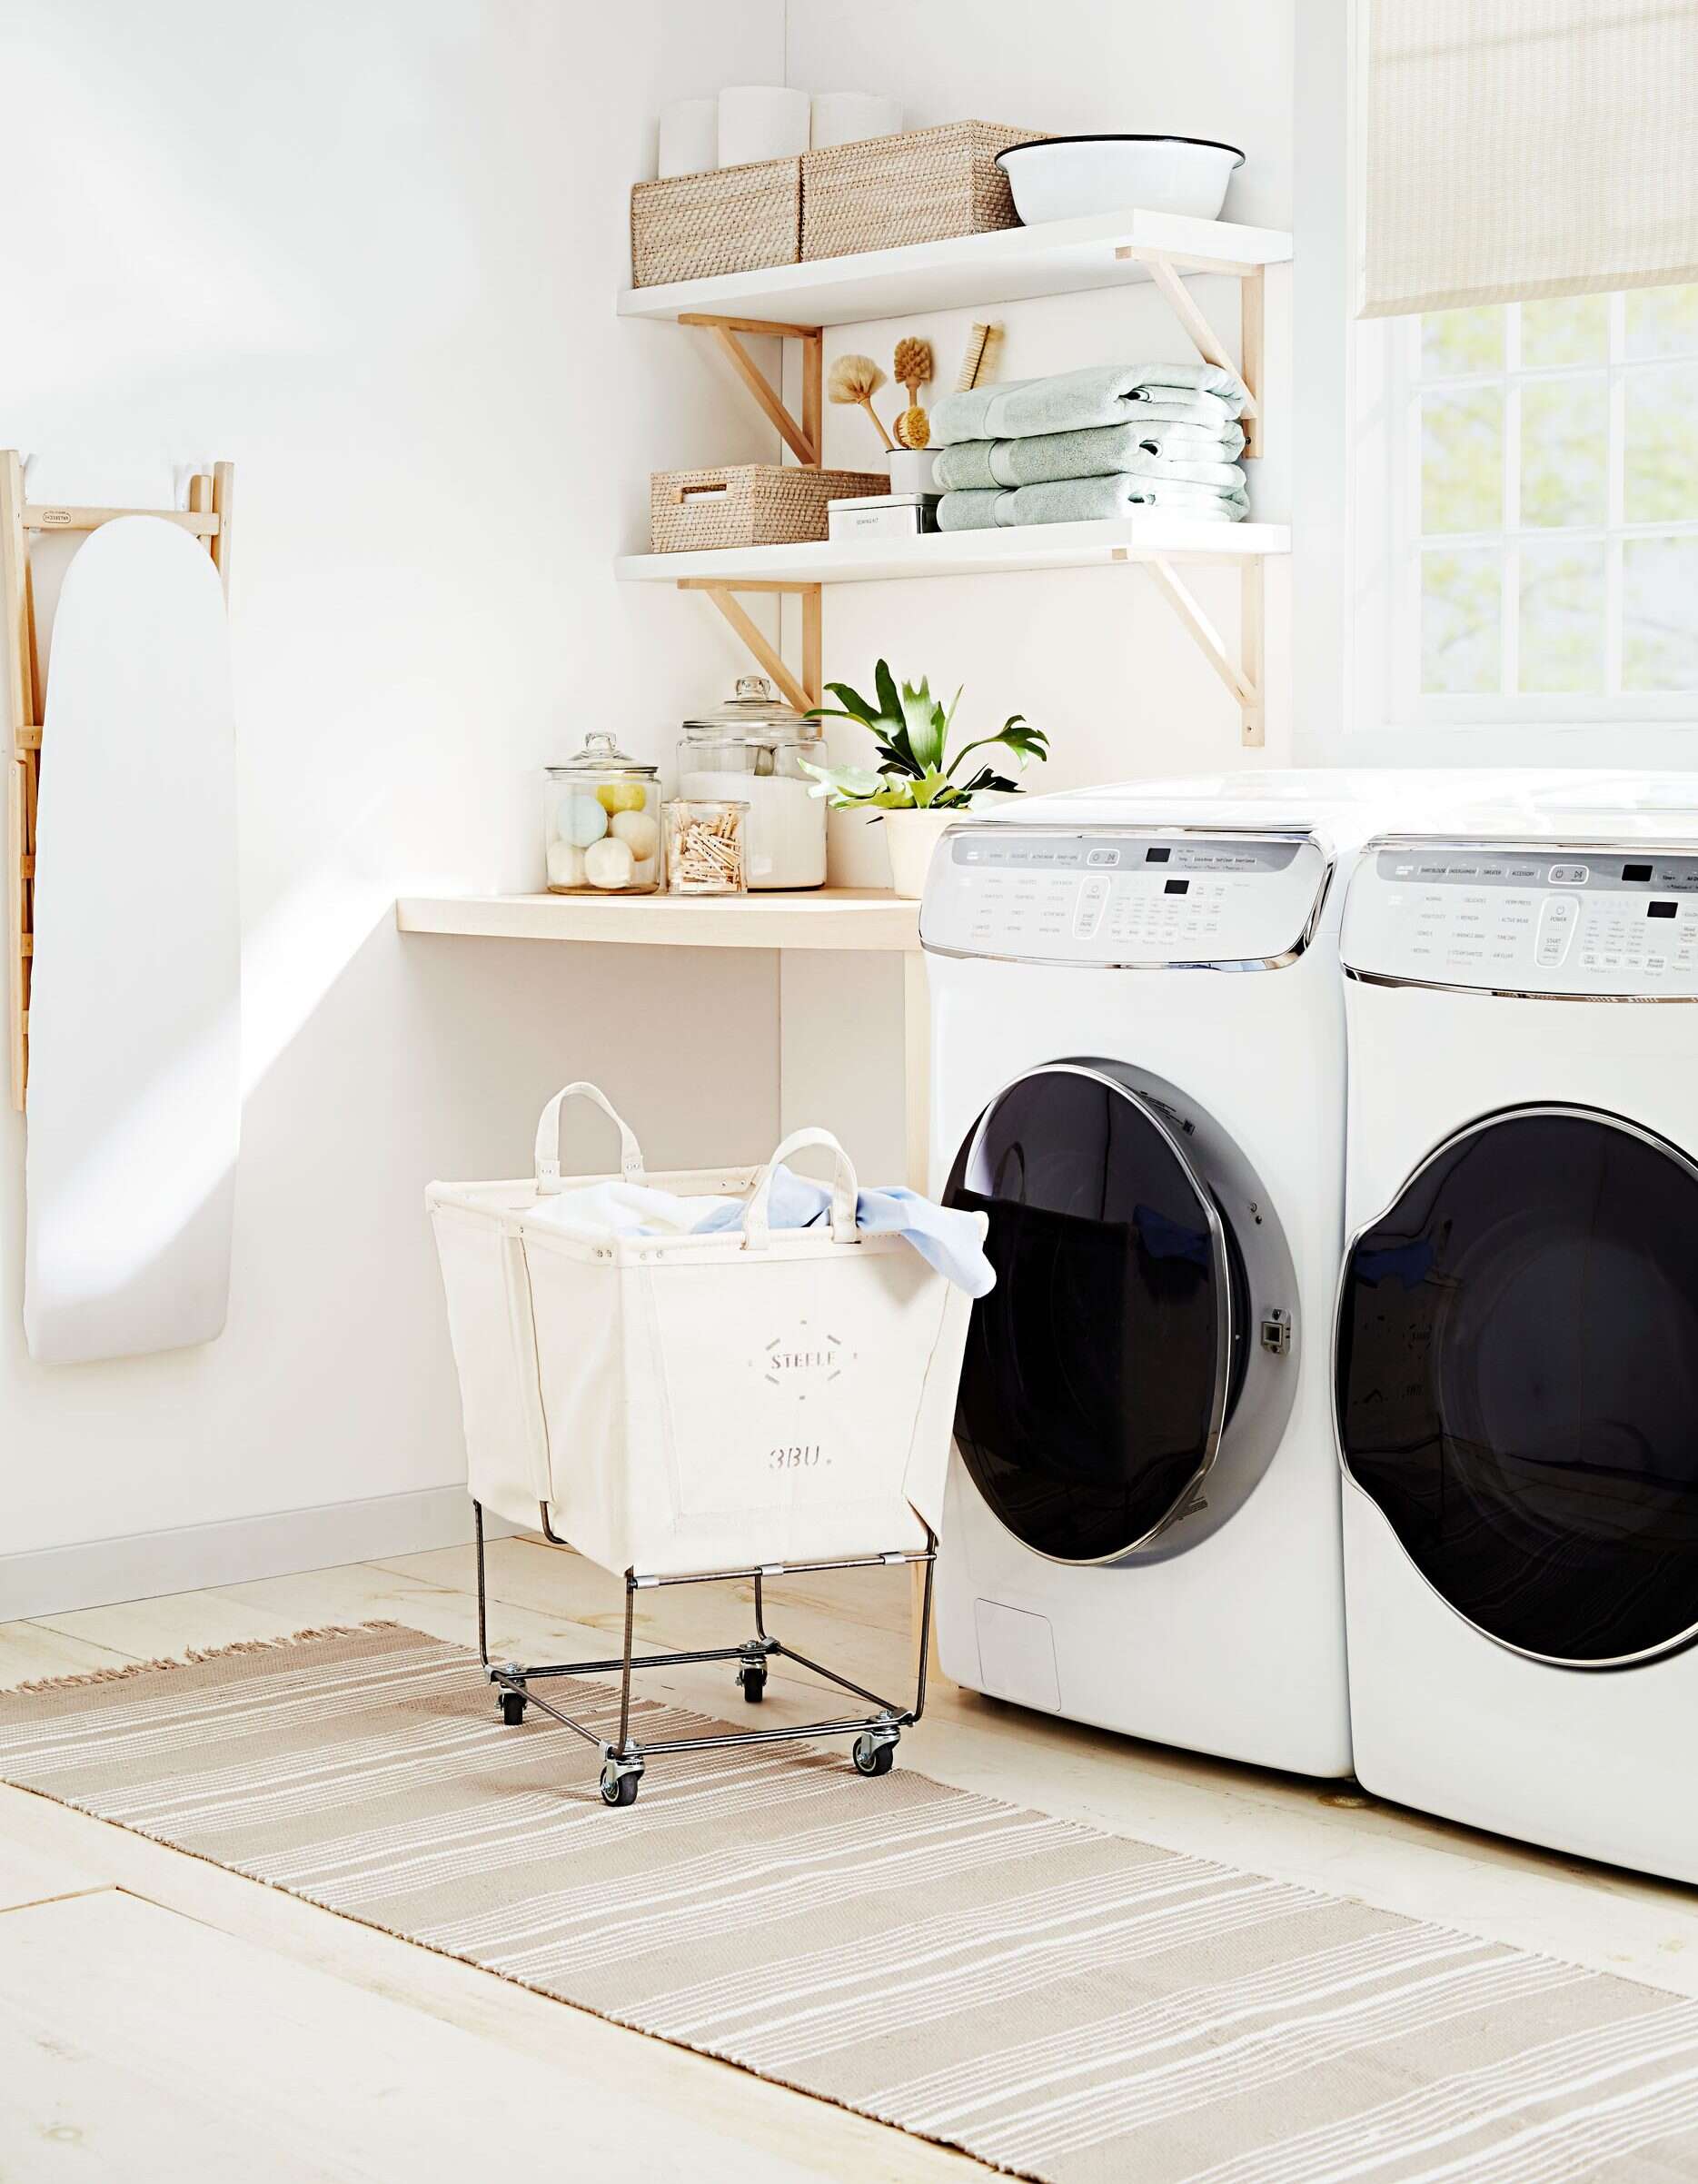 Hô biến phòng giặt tại nhà vừa ấn tượng, vừa tiện dụng chỉ với 5 cách đơn giản vô cùng - Ảnh 7.